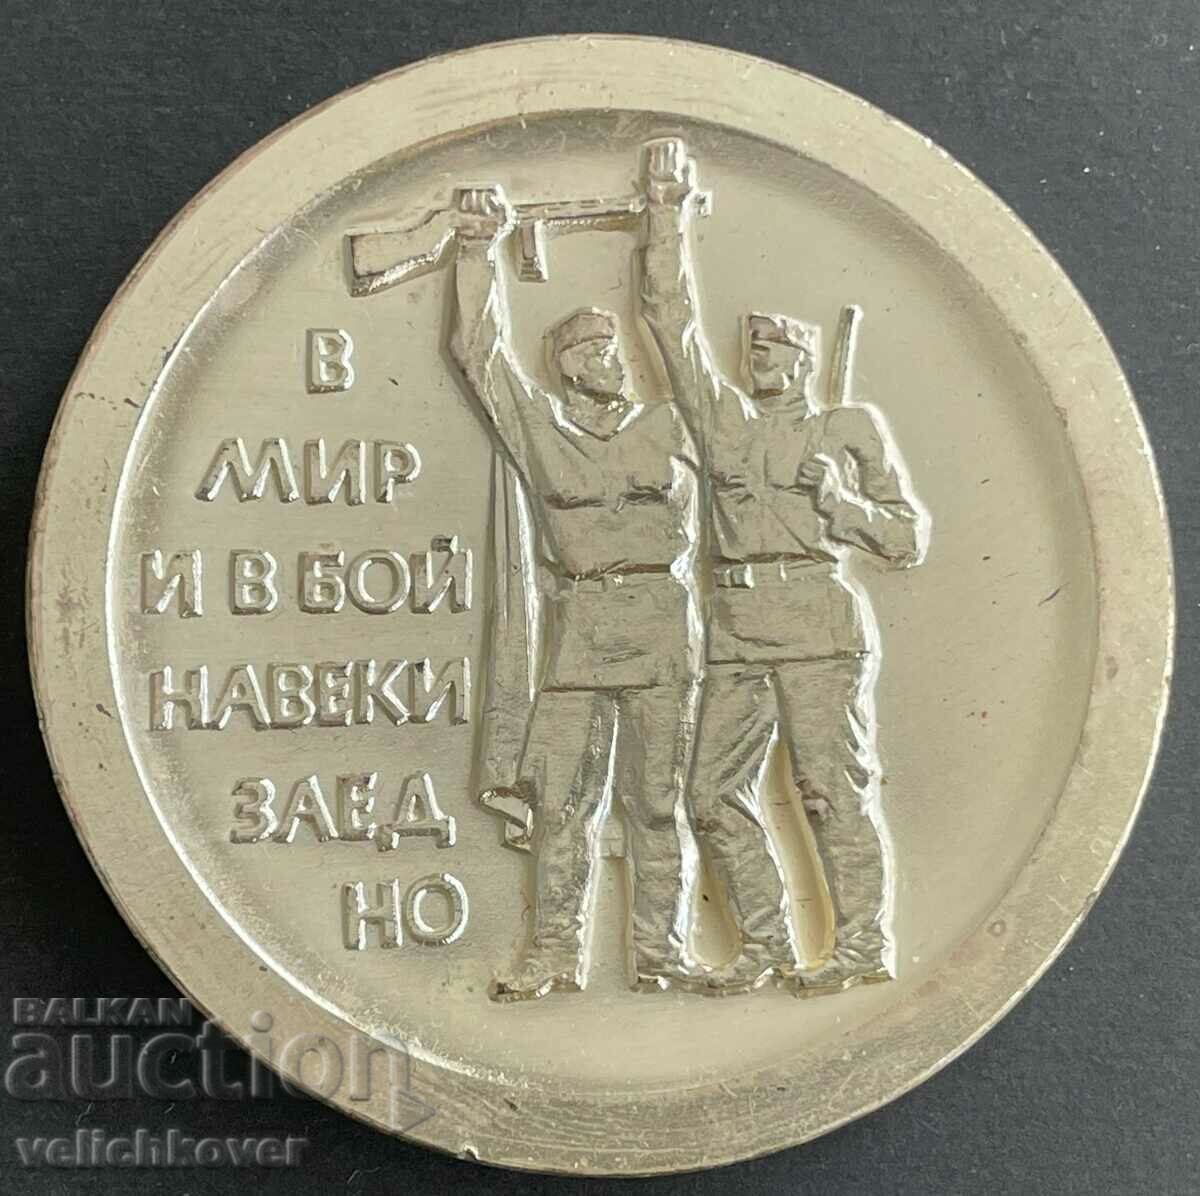 33684 България в мир и в бой навеки задно 1945-1970г. ВСВ